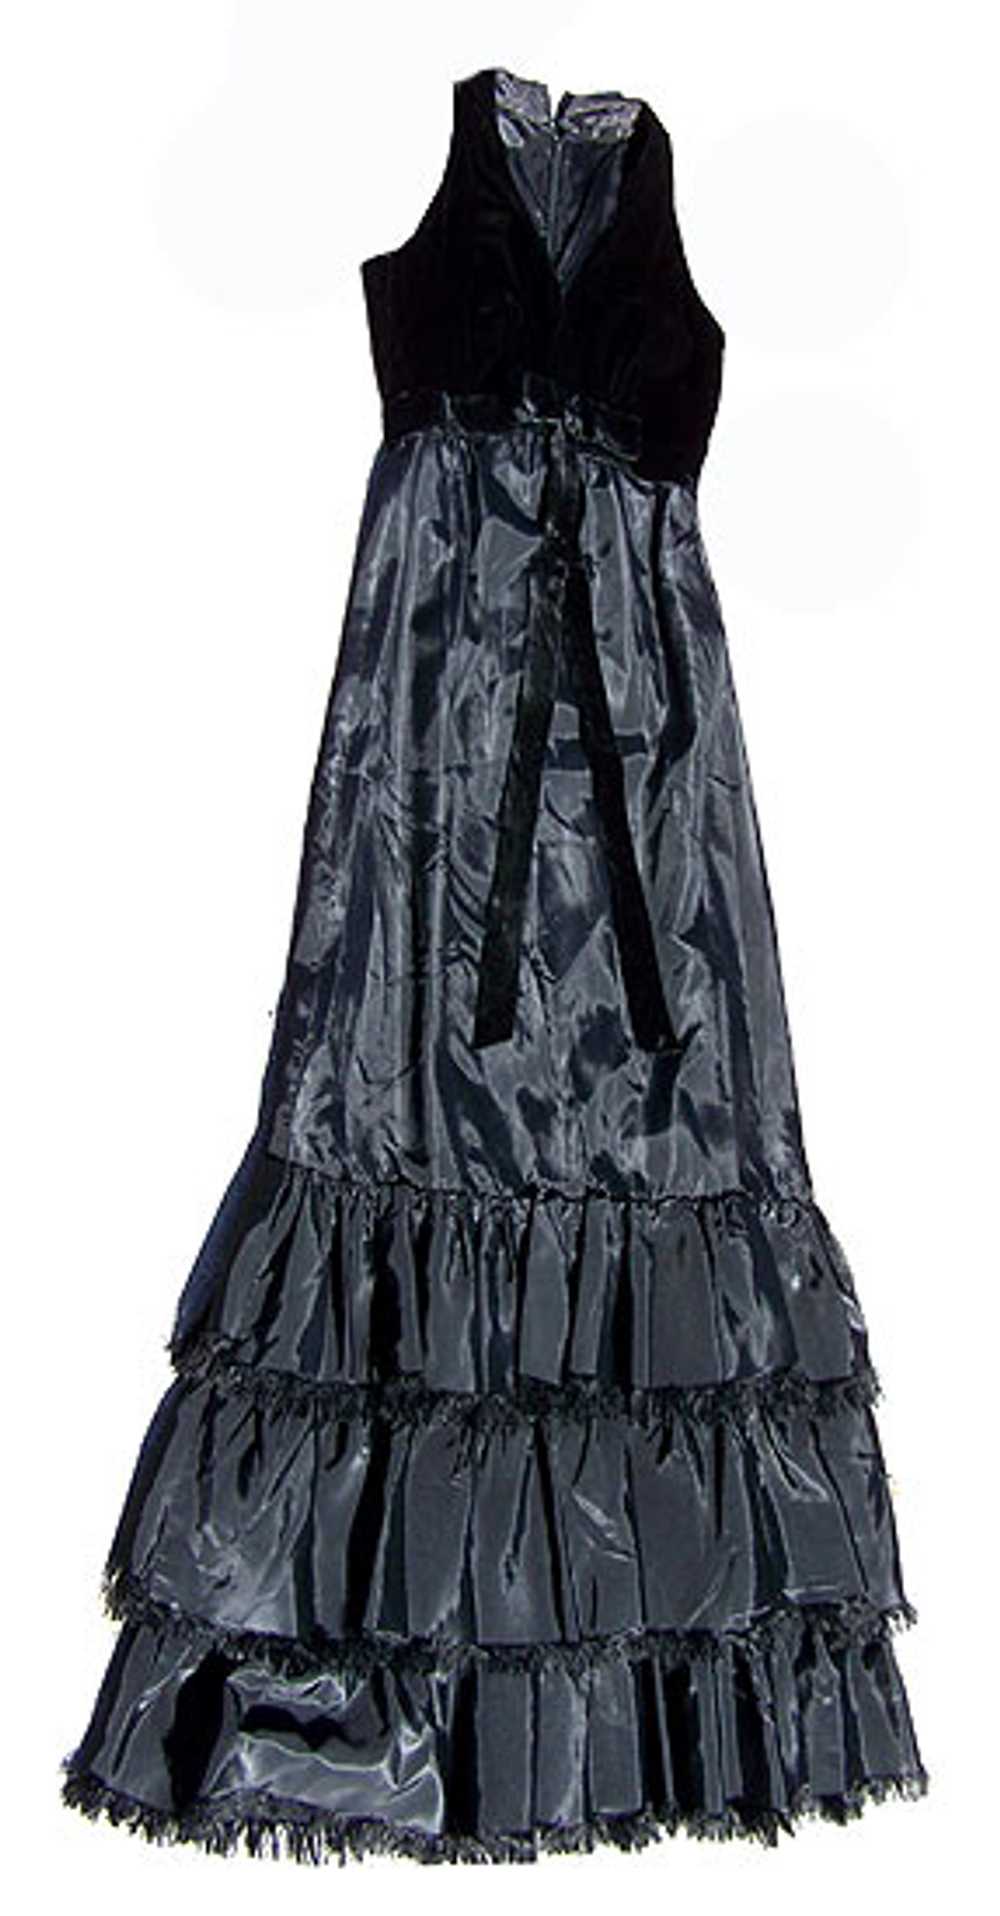 Velvet & taffeta gown - image 1